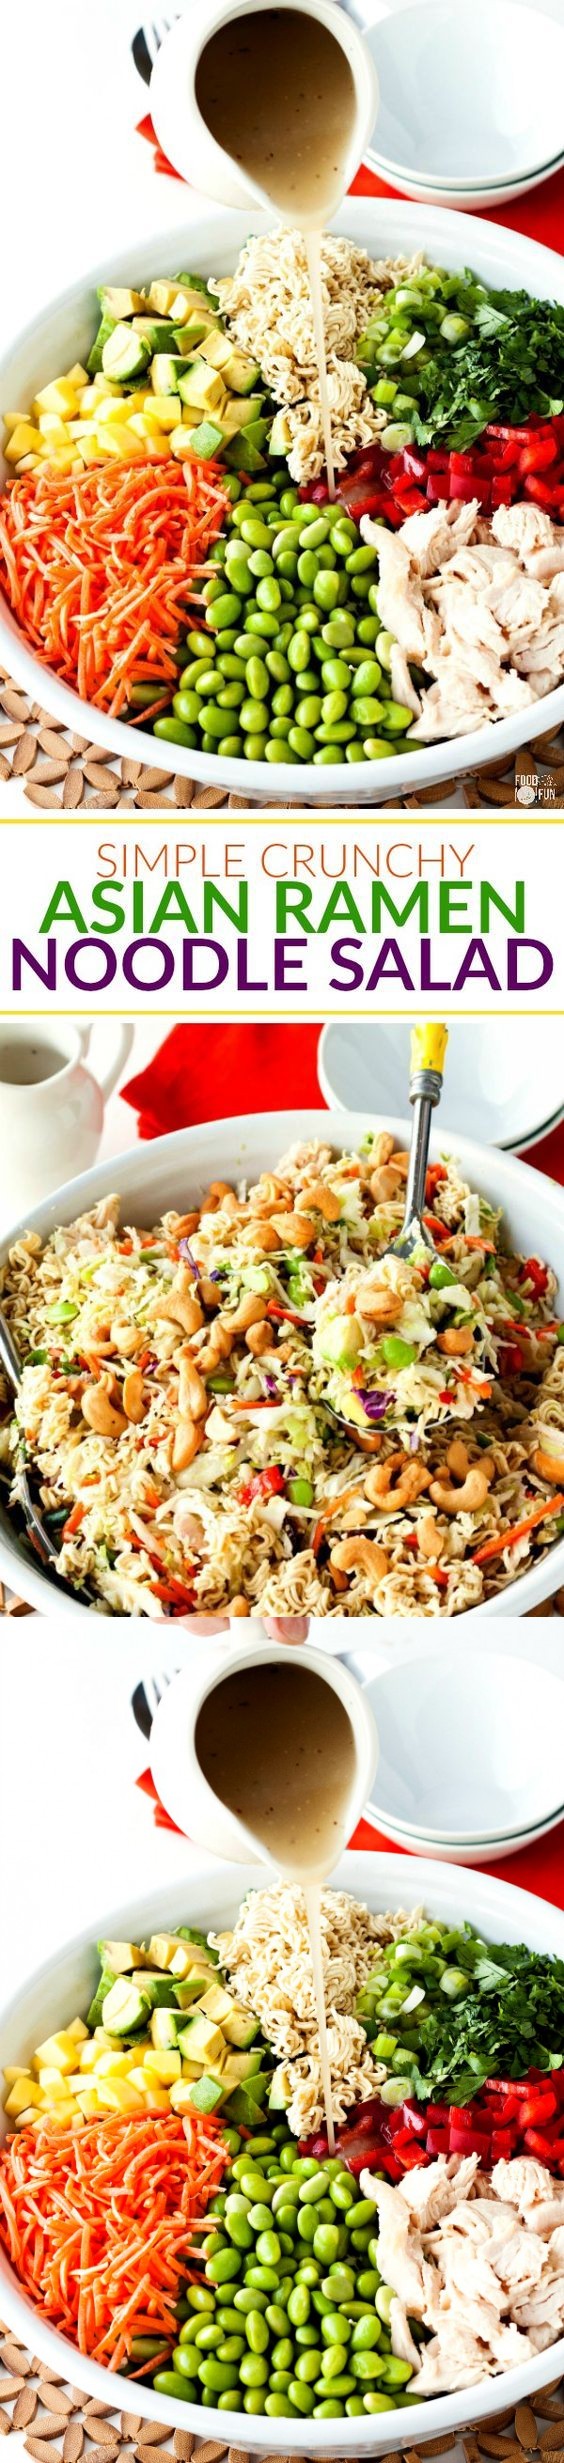 Simple Crunchy Asian Ramen Noodle Salad